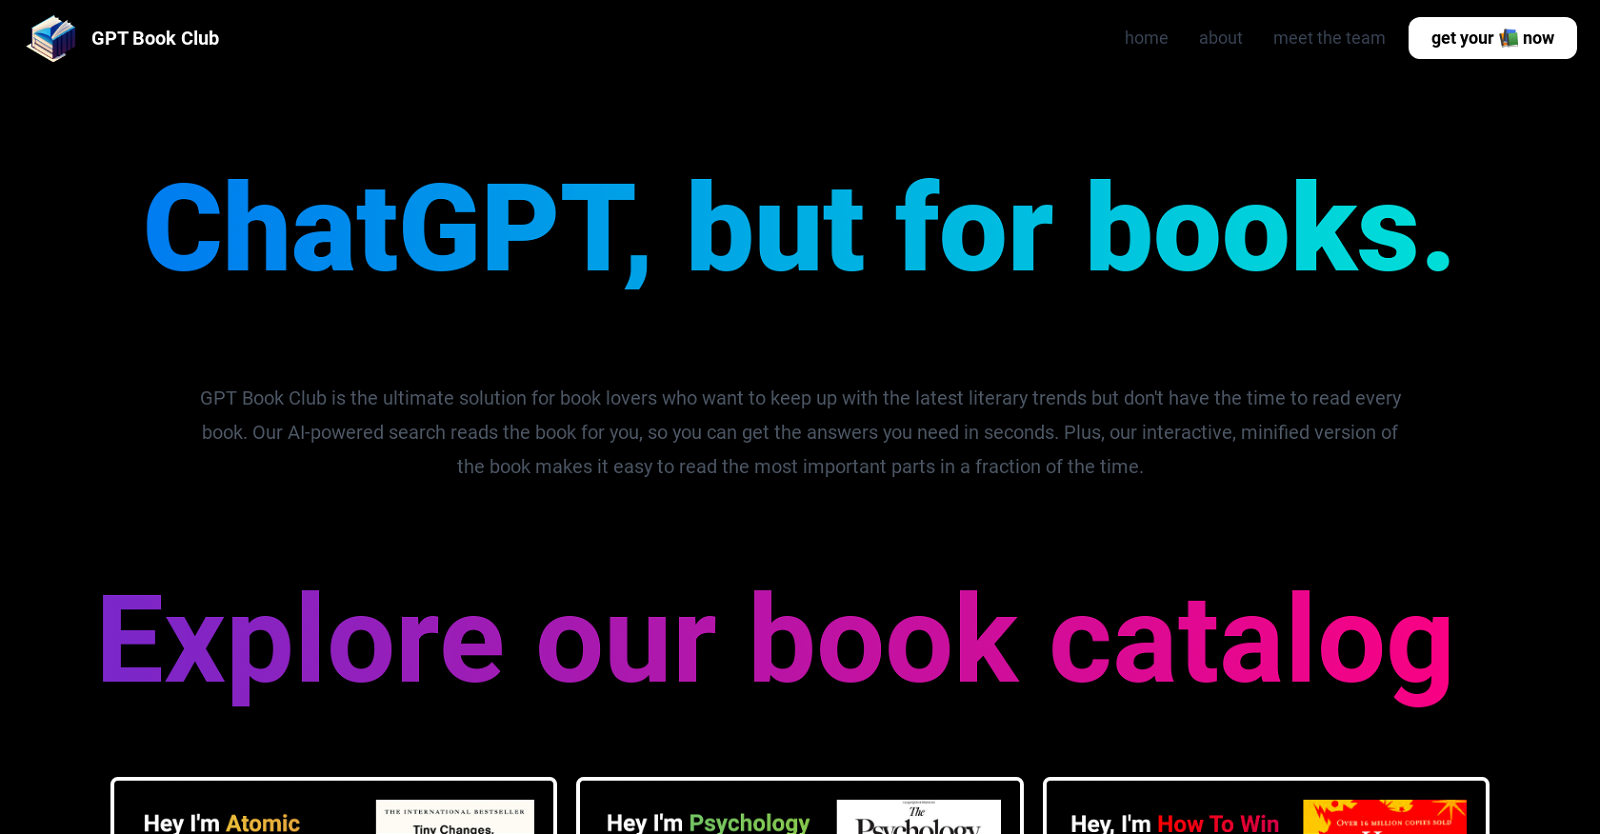 GPT Book Club website